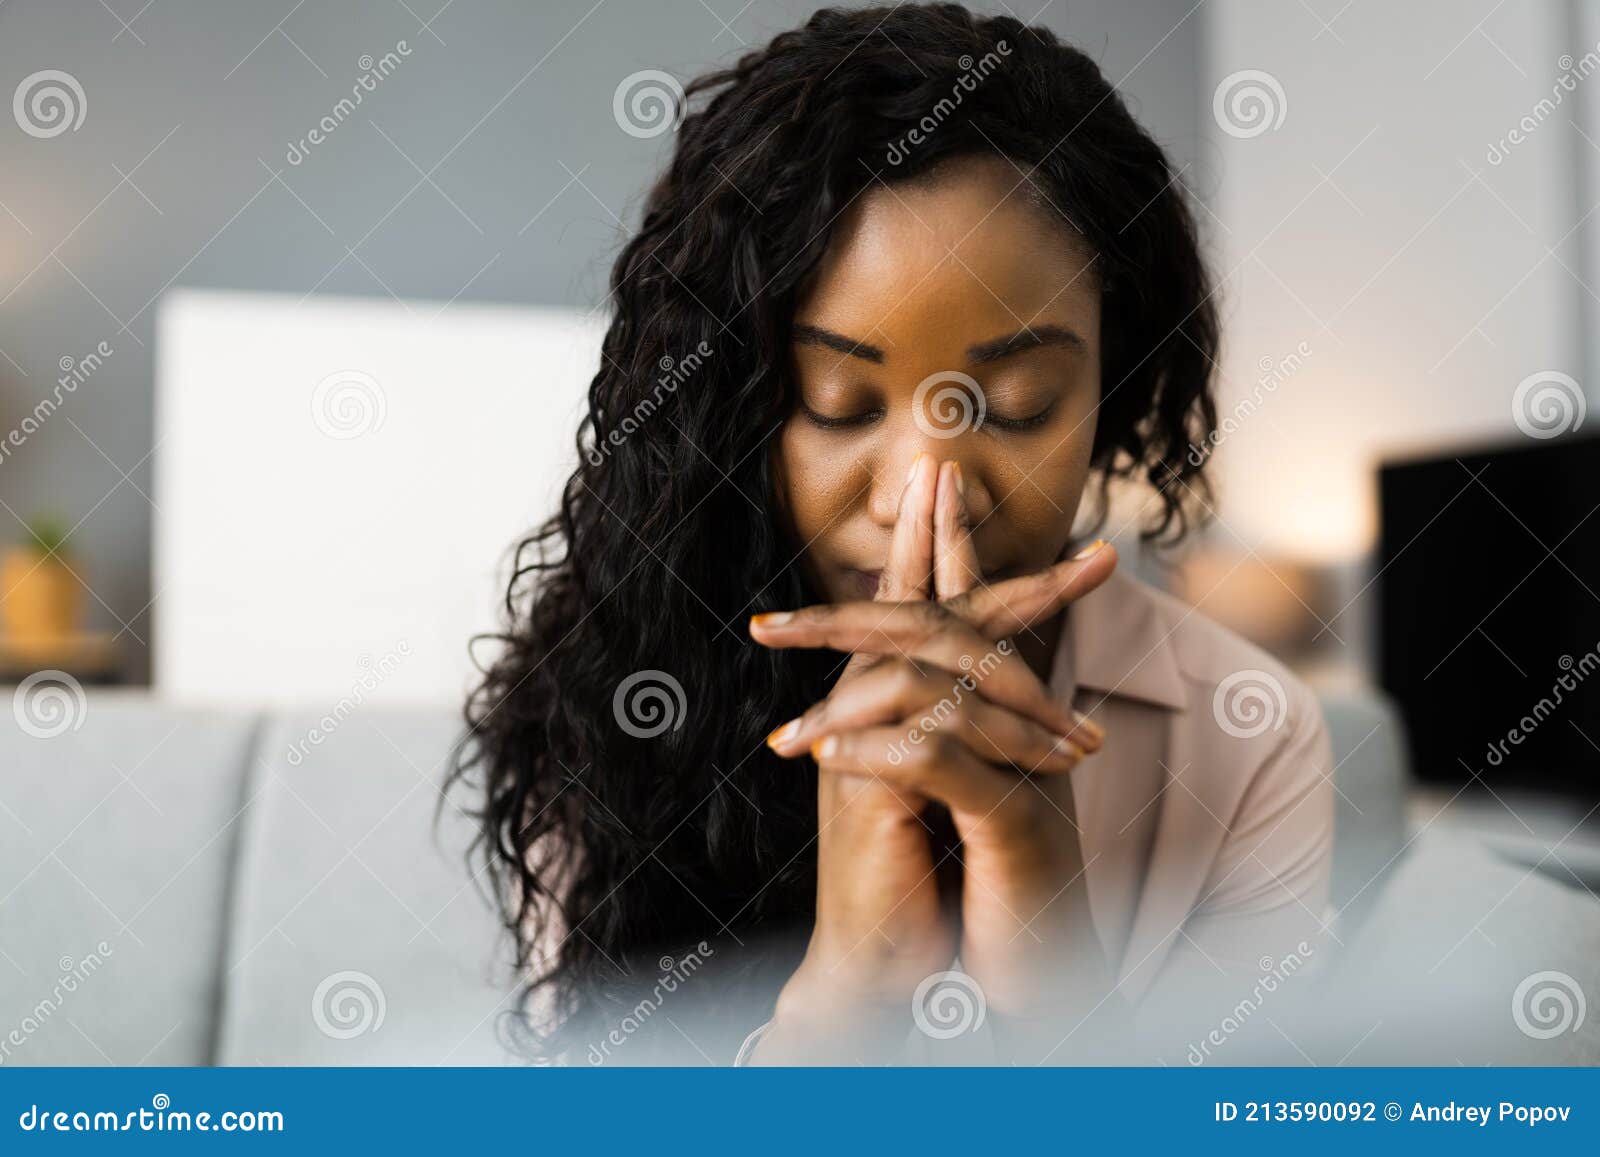 african american woman praying